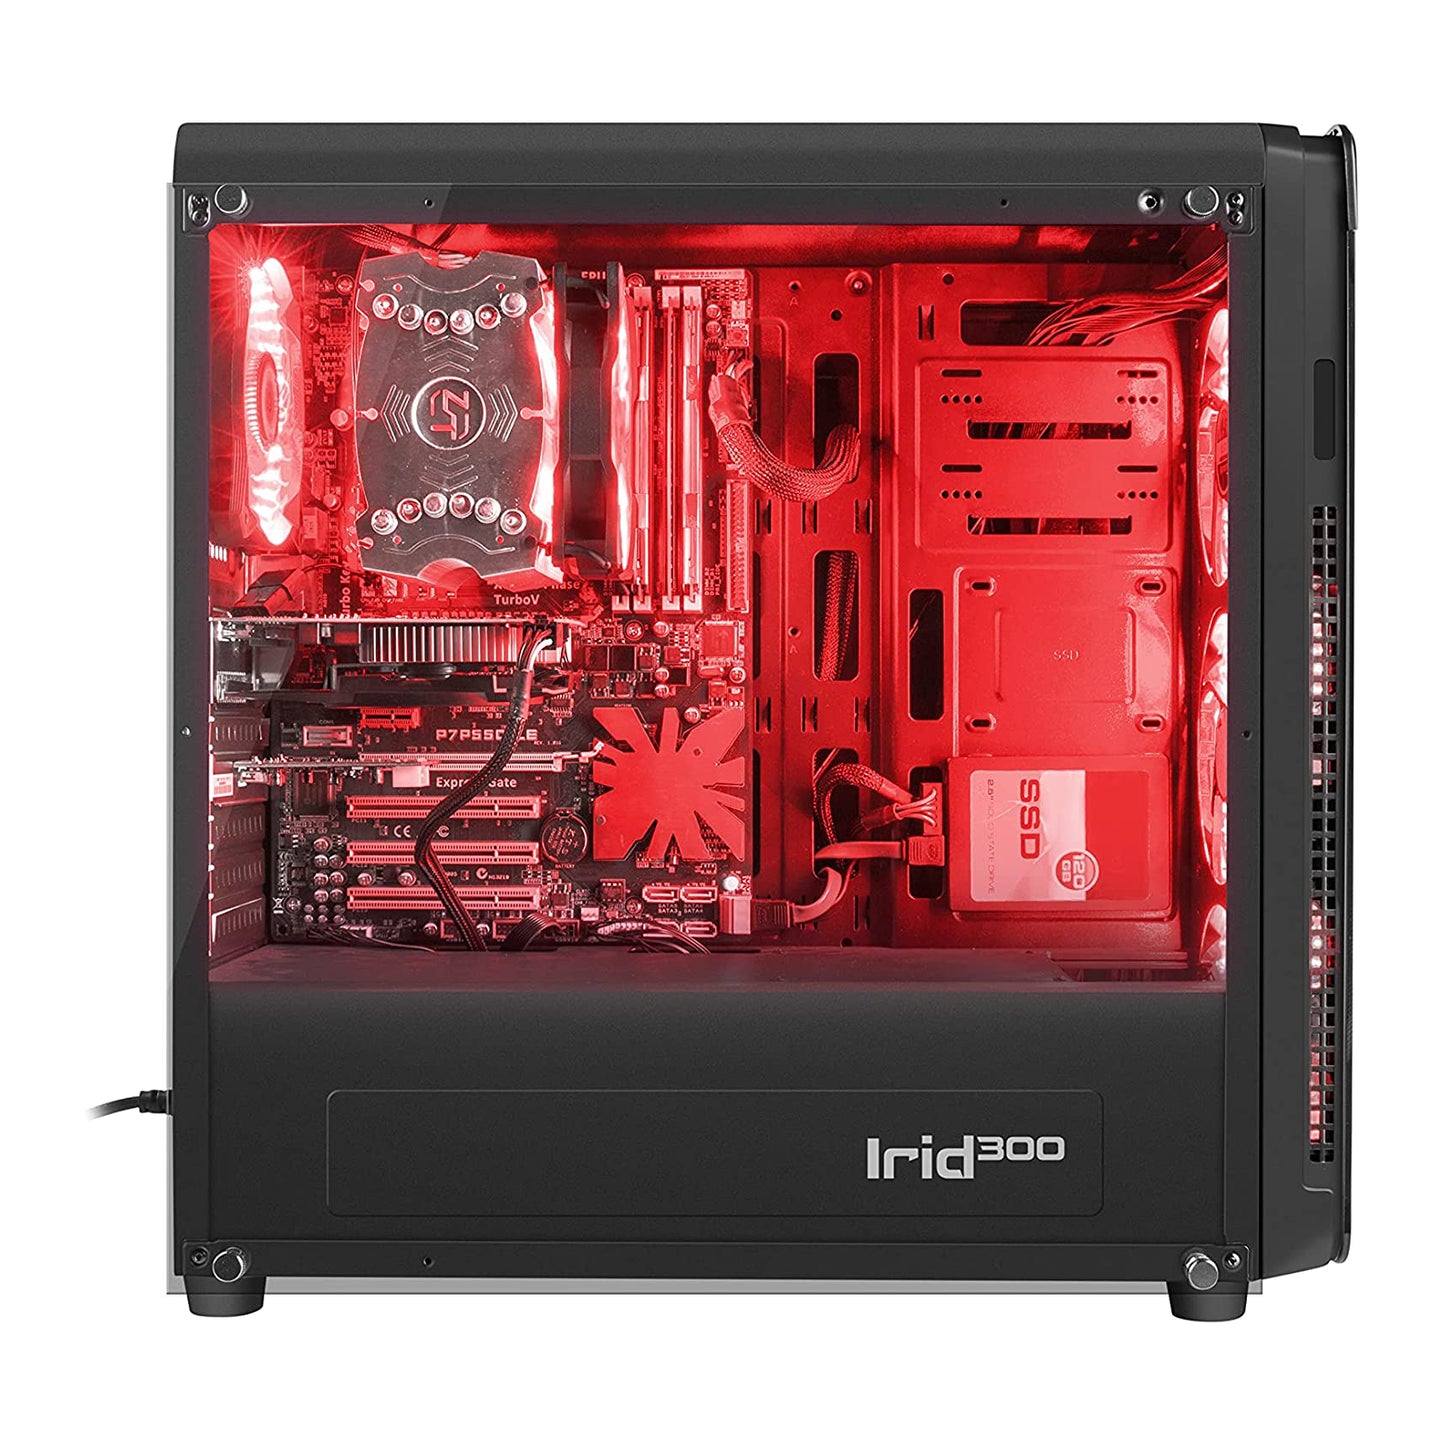 Genesis Irid 300 Core i5-7400 Gtx 1060 | Red | Gaming Desktop Computer (Used Very Clean)